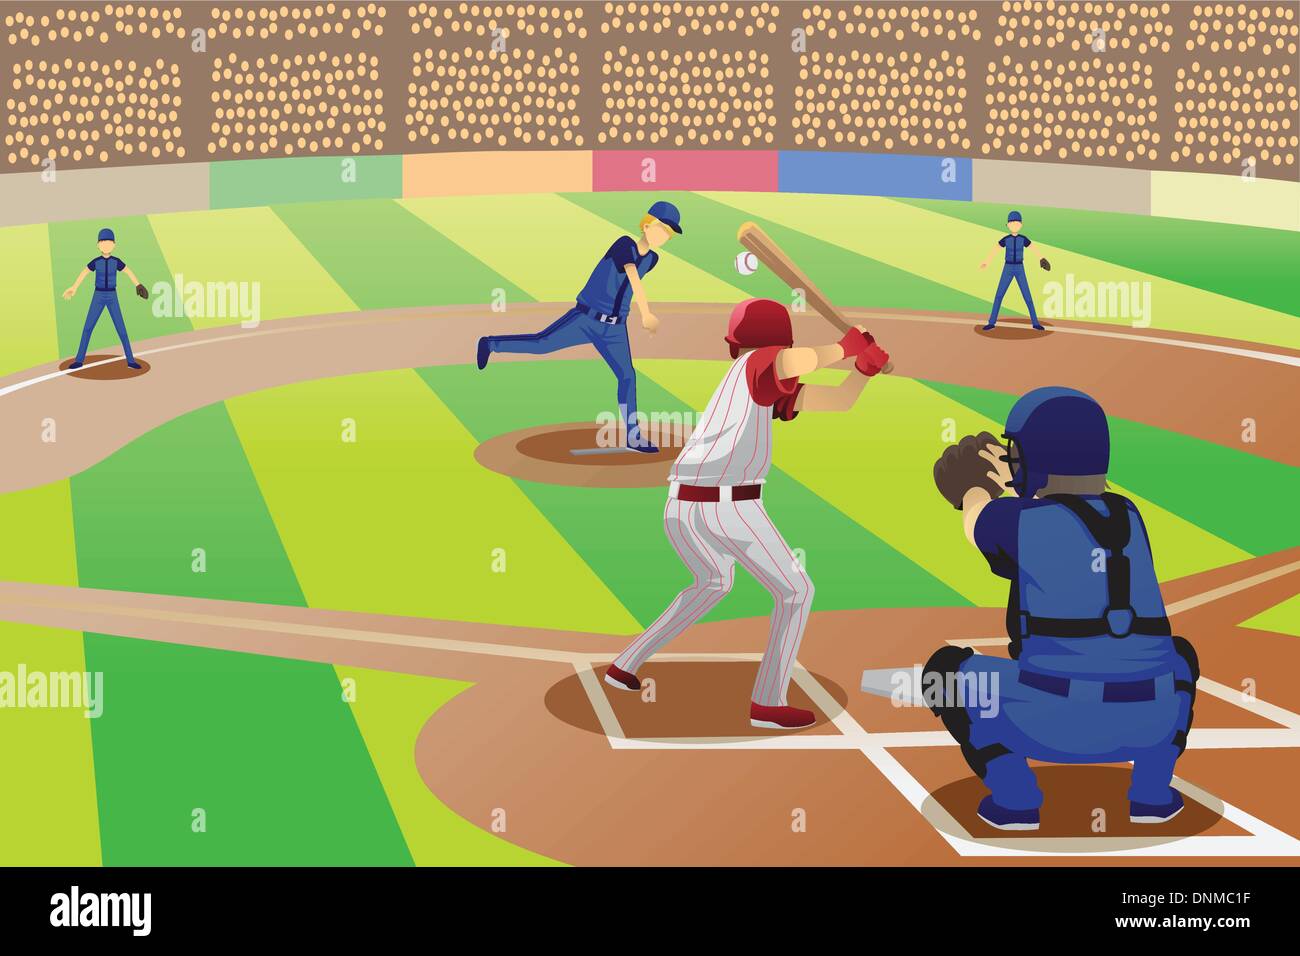 Eine Vektor-Illustration der Baseball-Spieler in einem Baseball-Spiel Stock Vektor